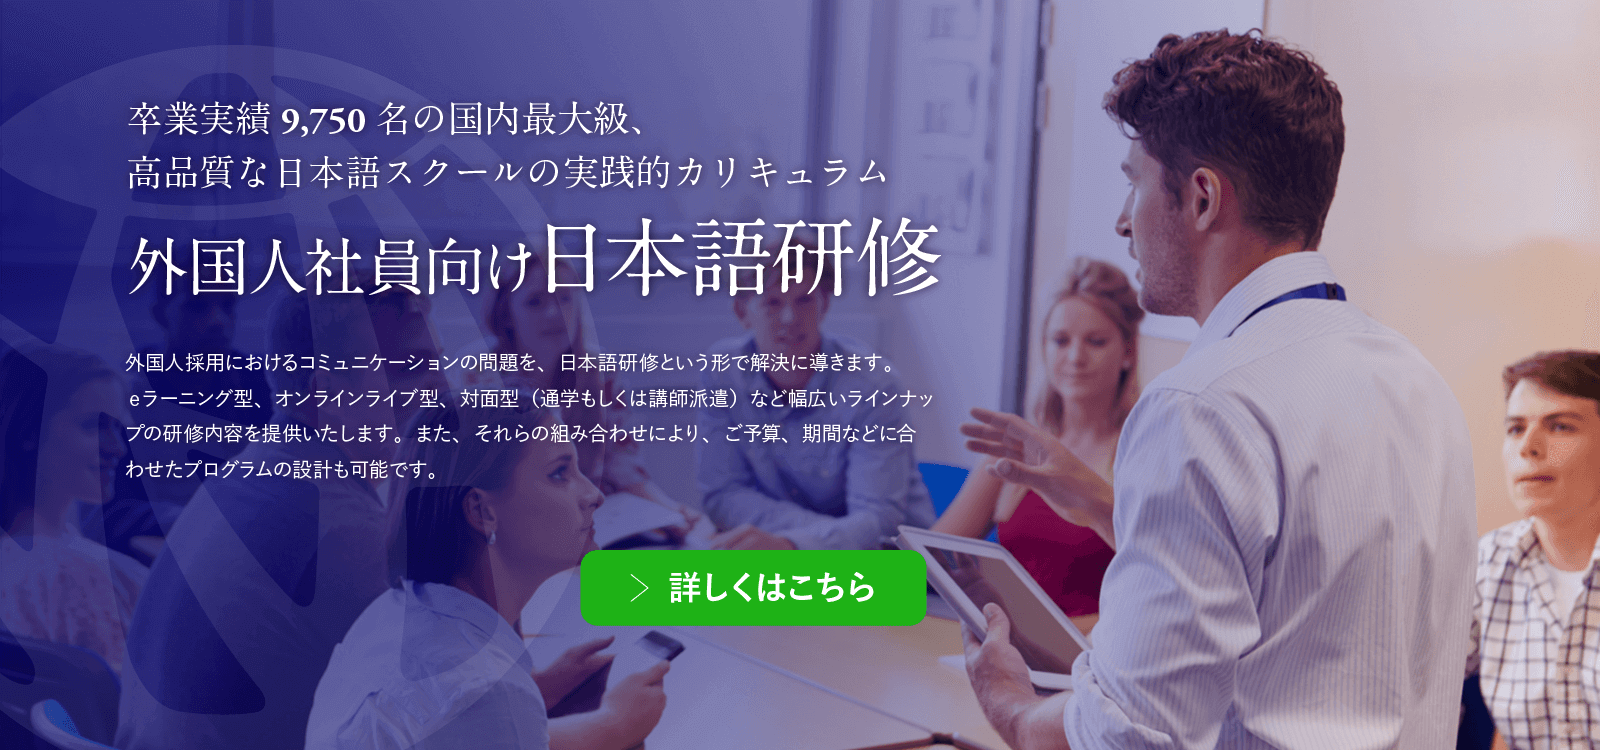 日本語語学研修